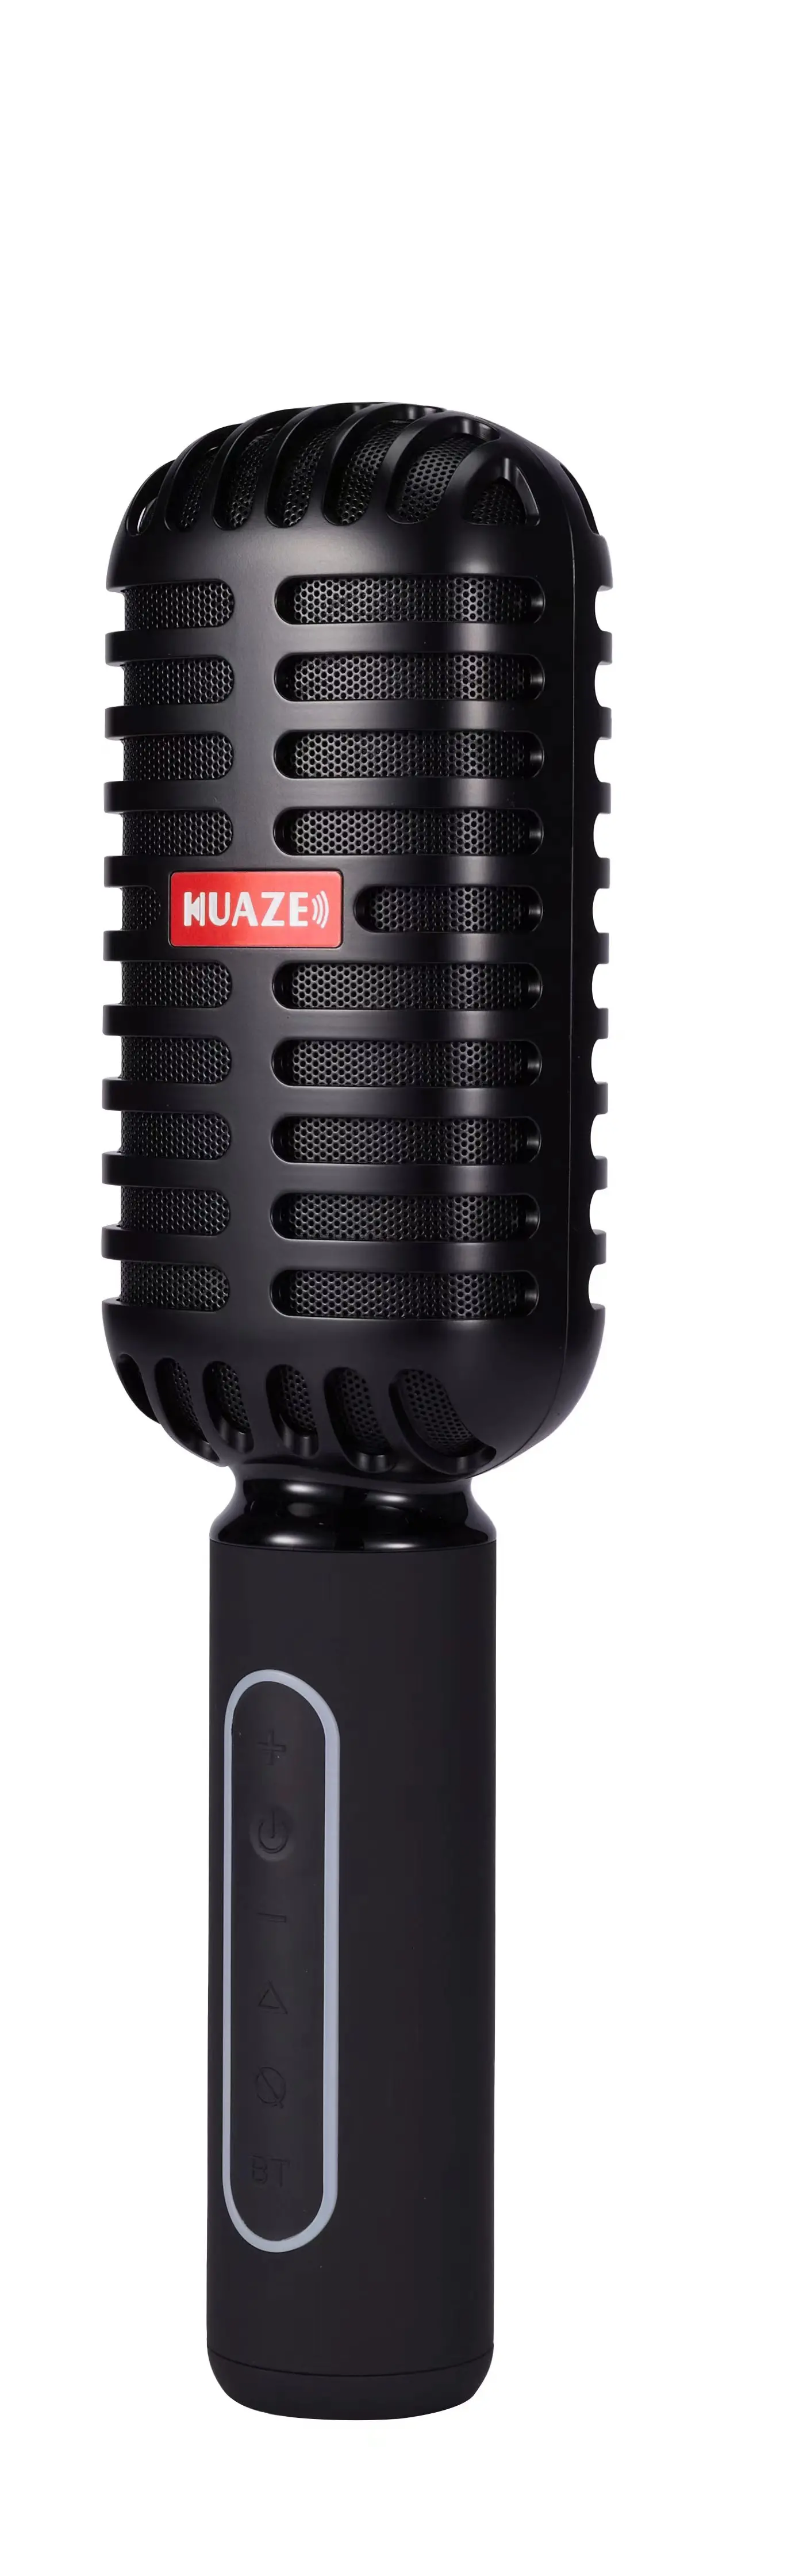 microphone wireless speaker